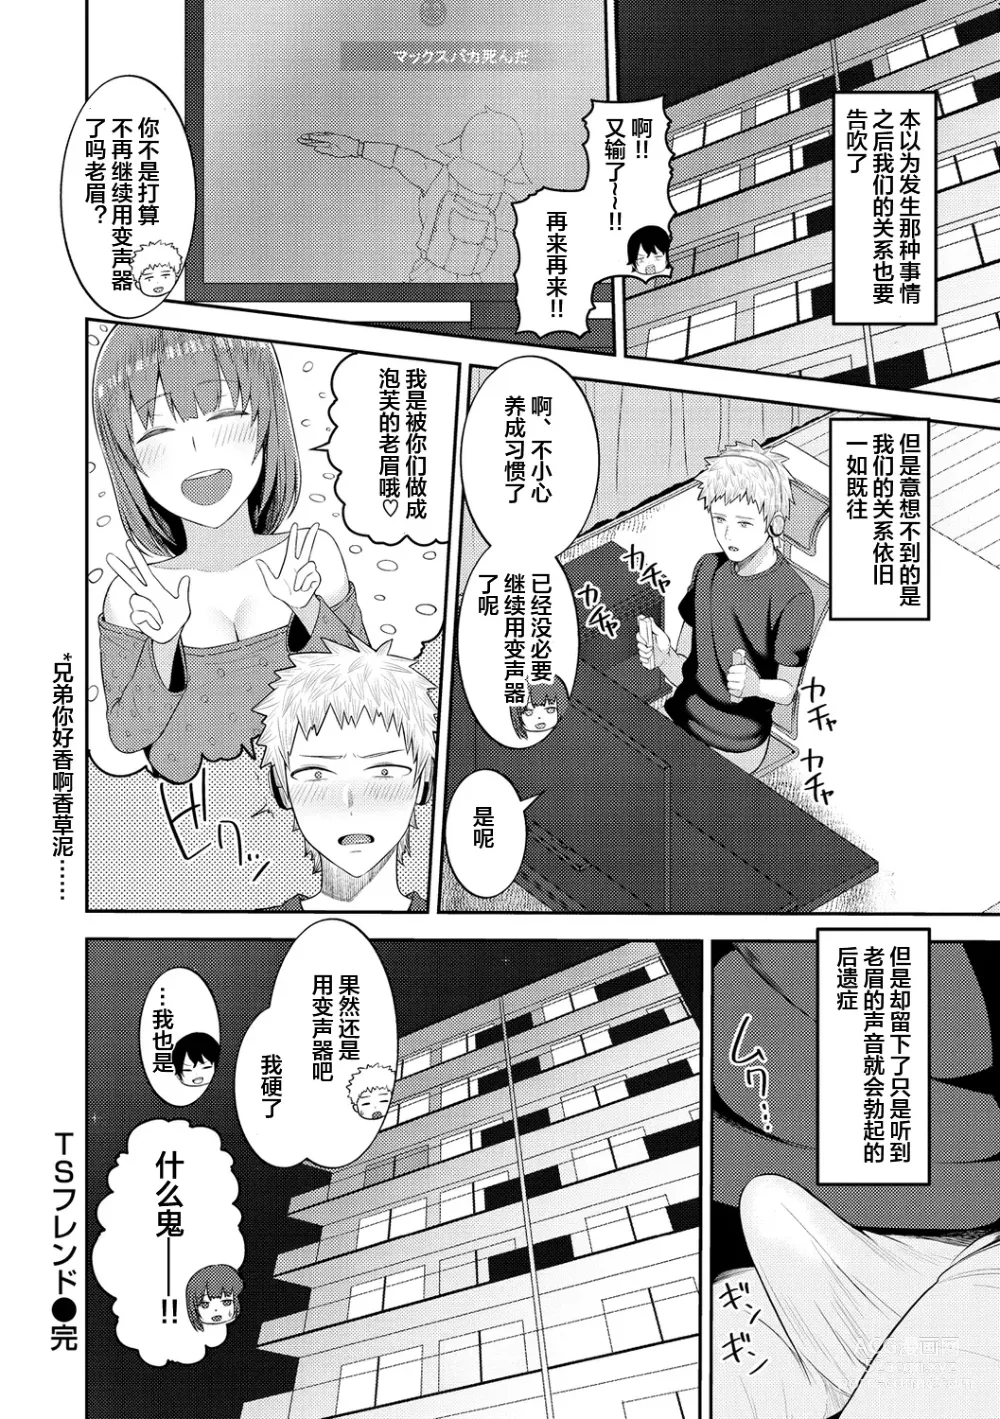 Page 159 of manga Amaete Hoshii no - I want you to spoil me